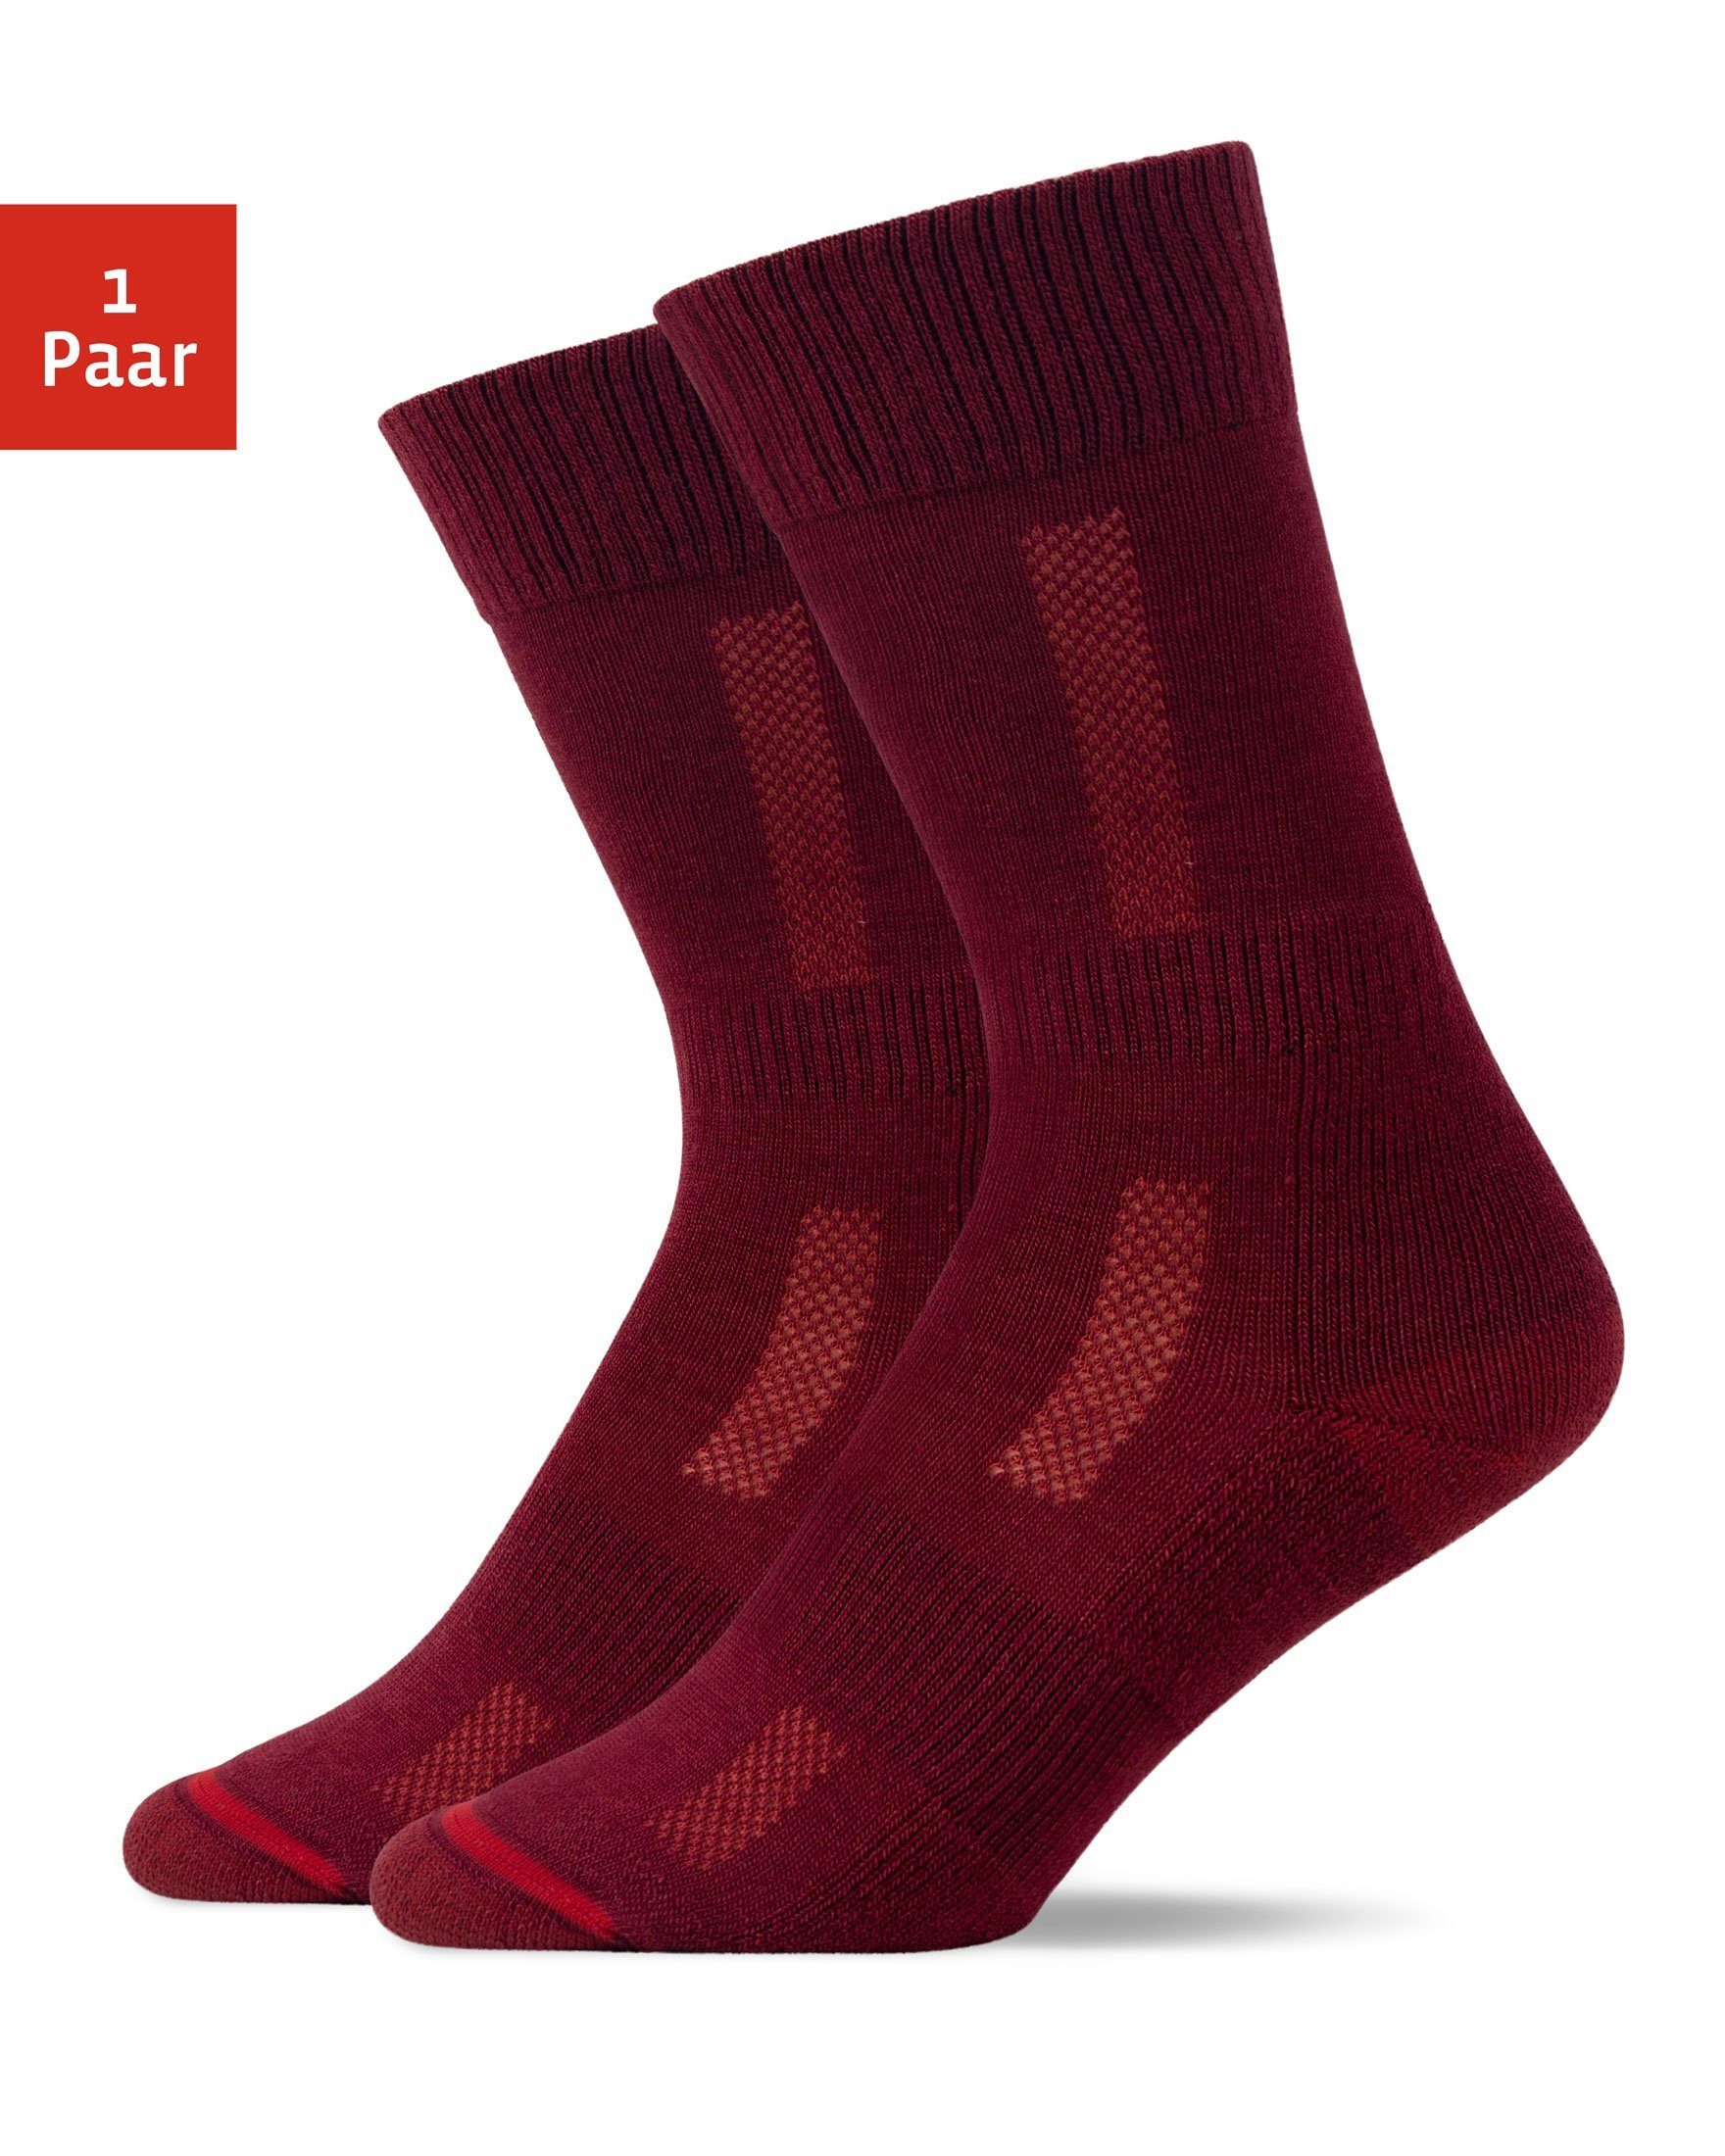 SNOCKS Wandersocken Hiking Socks für Damen & Herren (1-Paar) mit Merinowolle, garantiert keine Schweißfüße 02 Rot